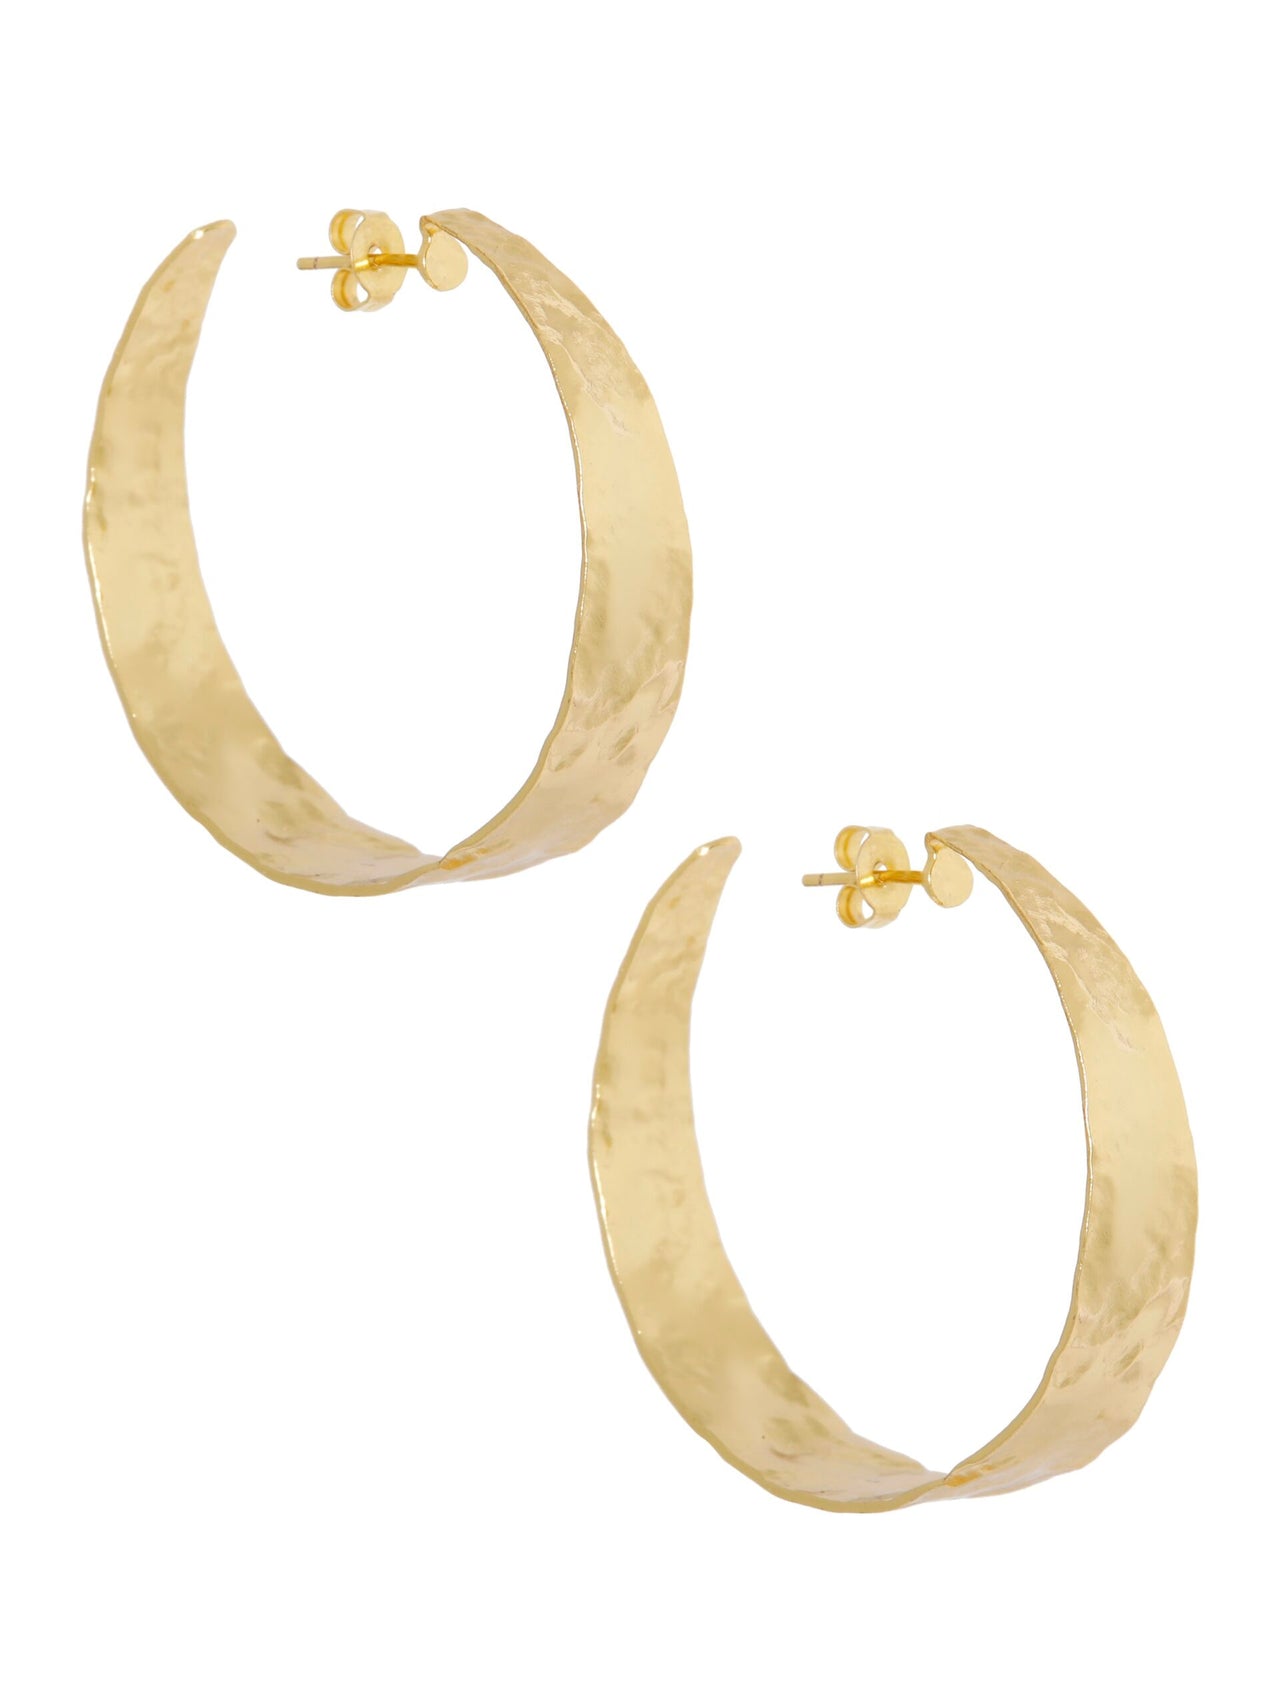 Brede Gehamerde Creolen (4cm) goud - LEEF mode en accessoires